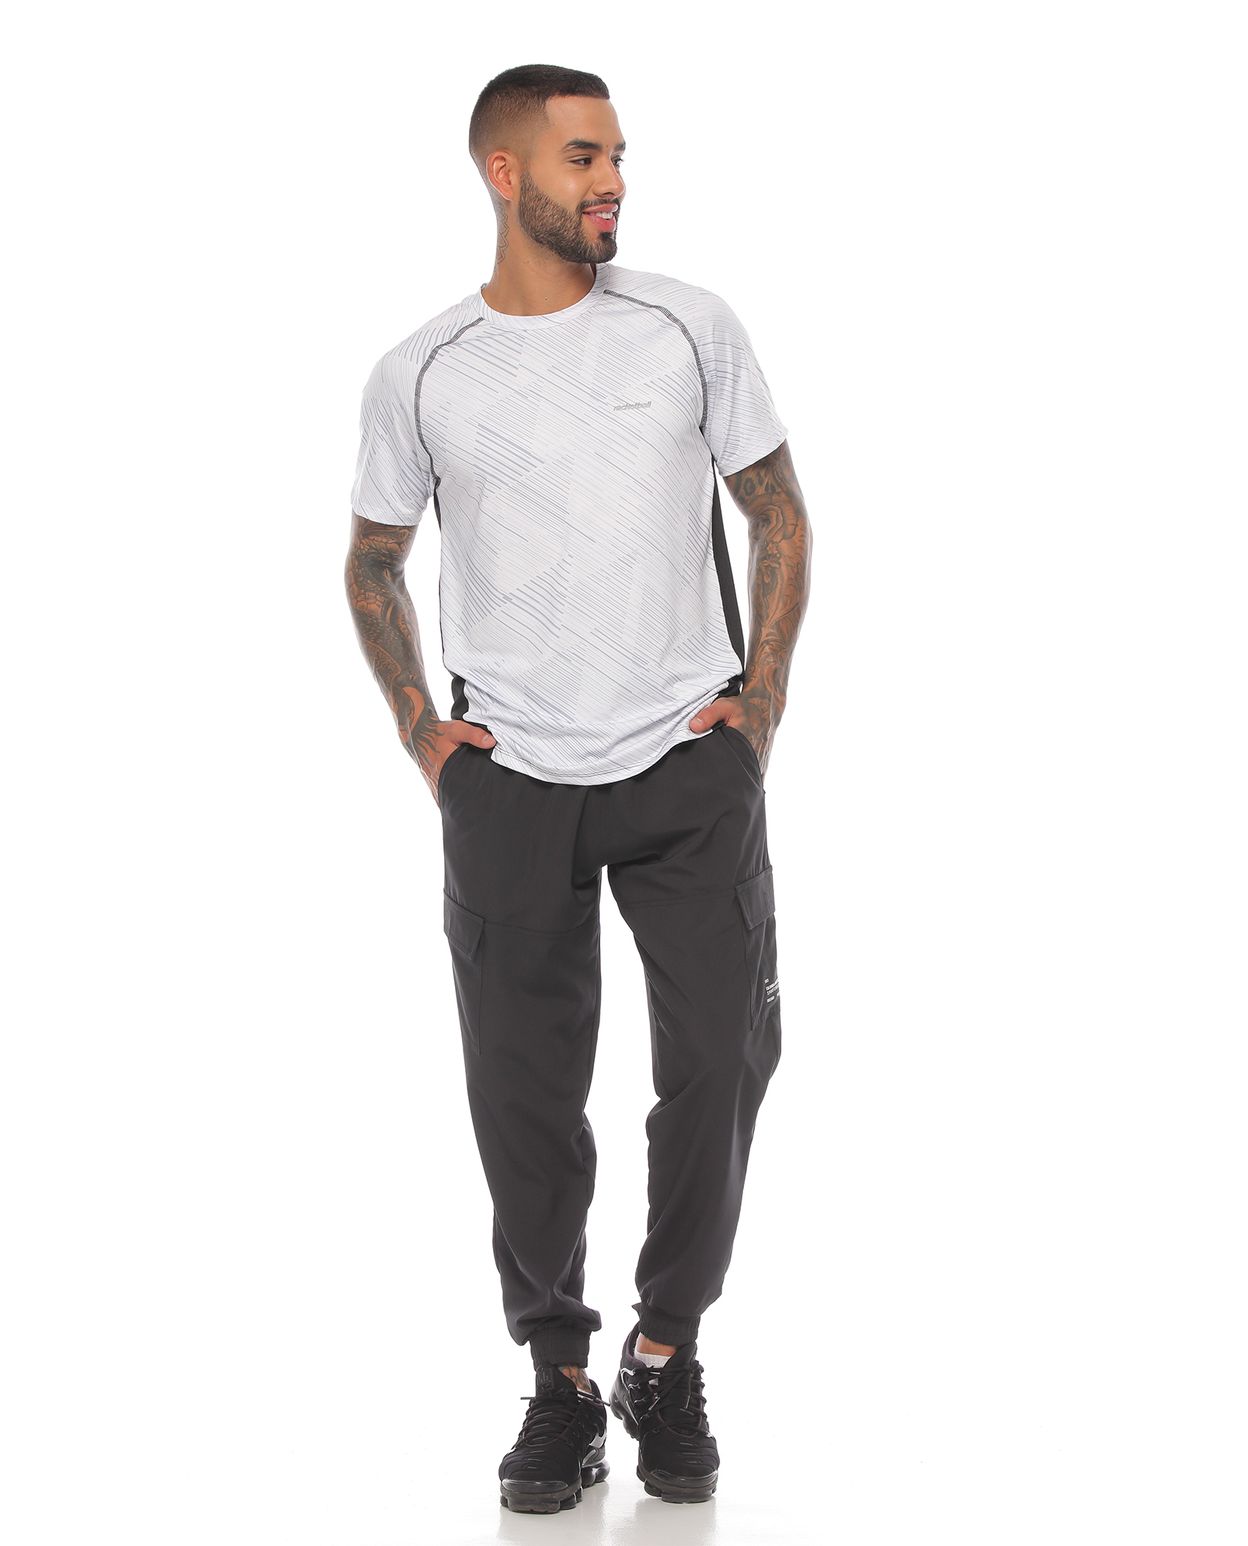 modelo con camiseta manga corta deportiva blanca y pantalon deportivo negro para hombre cuerpo completo